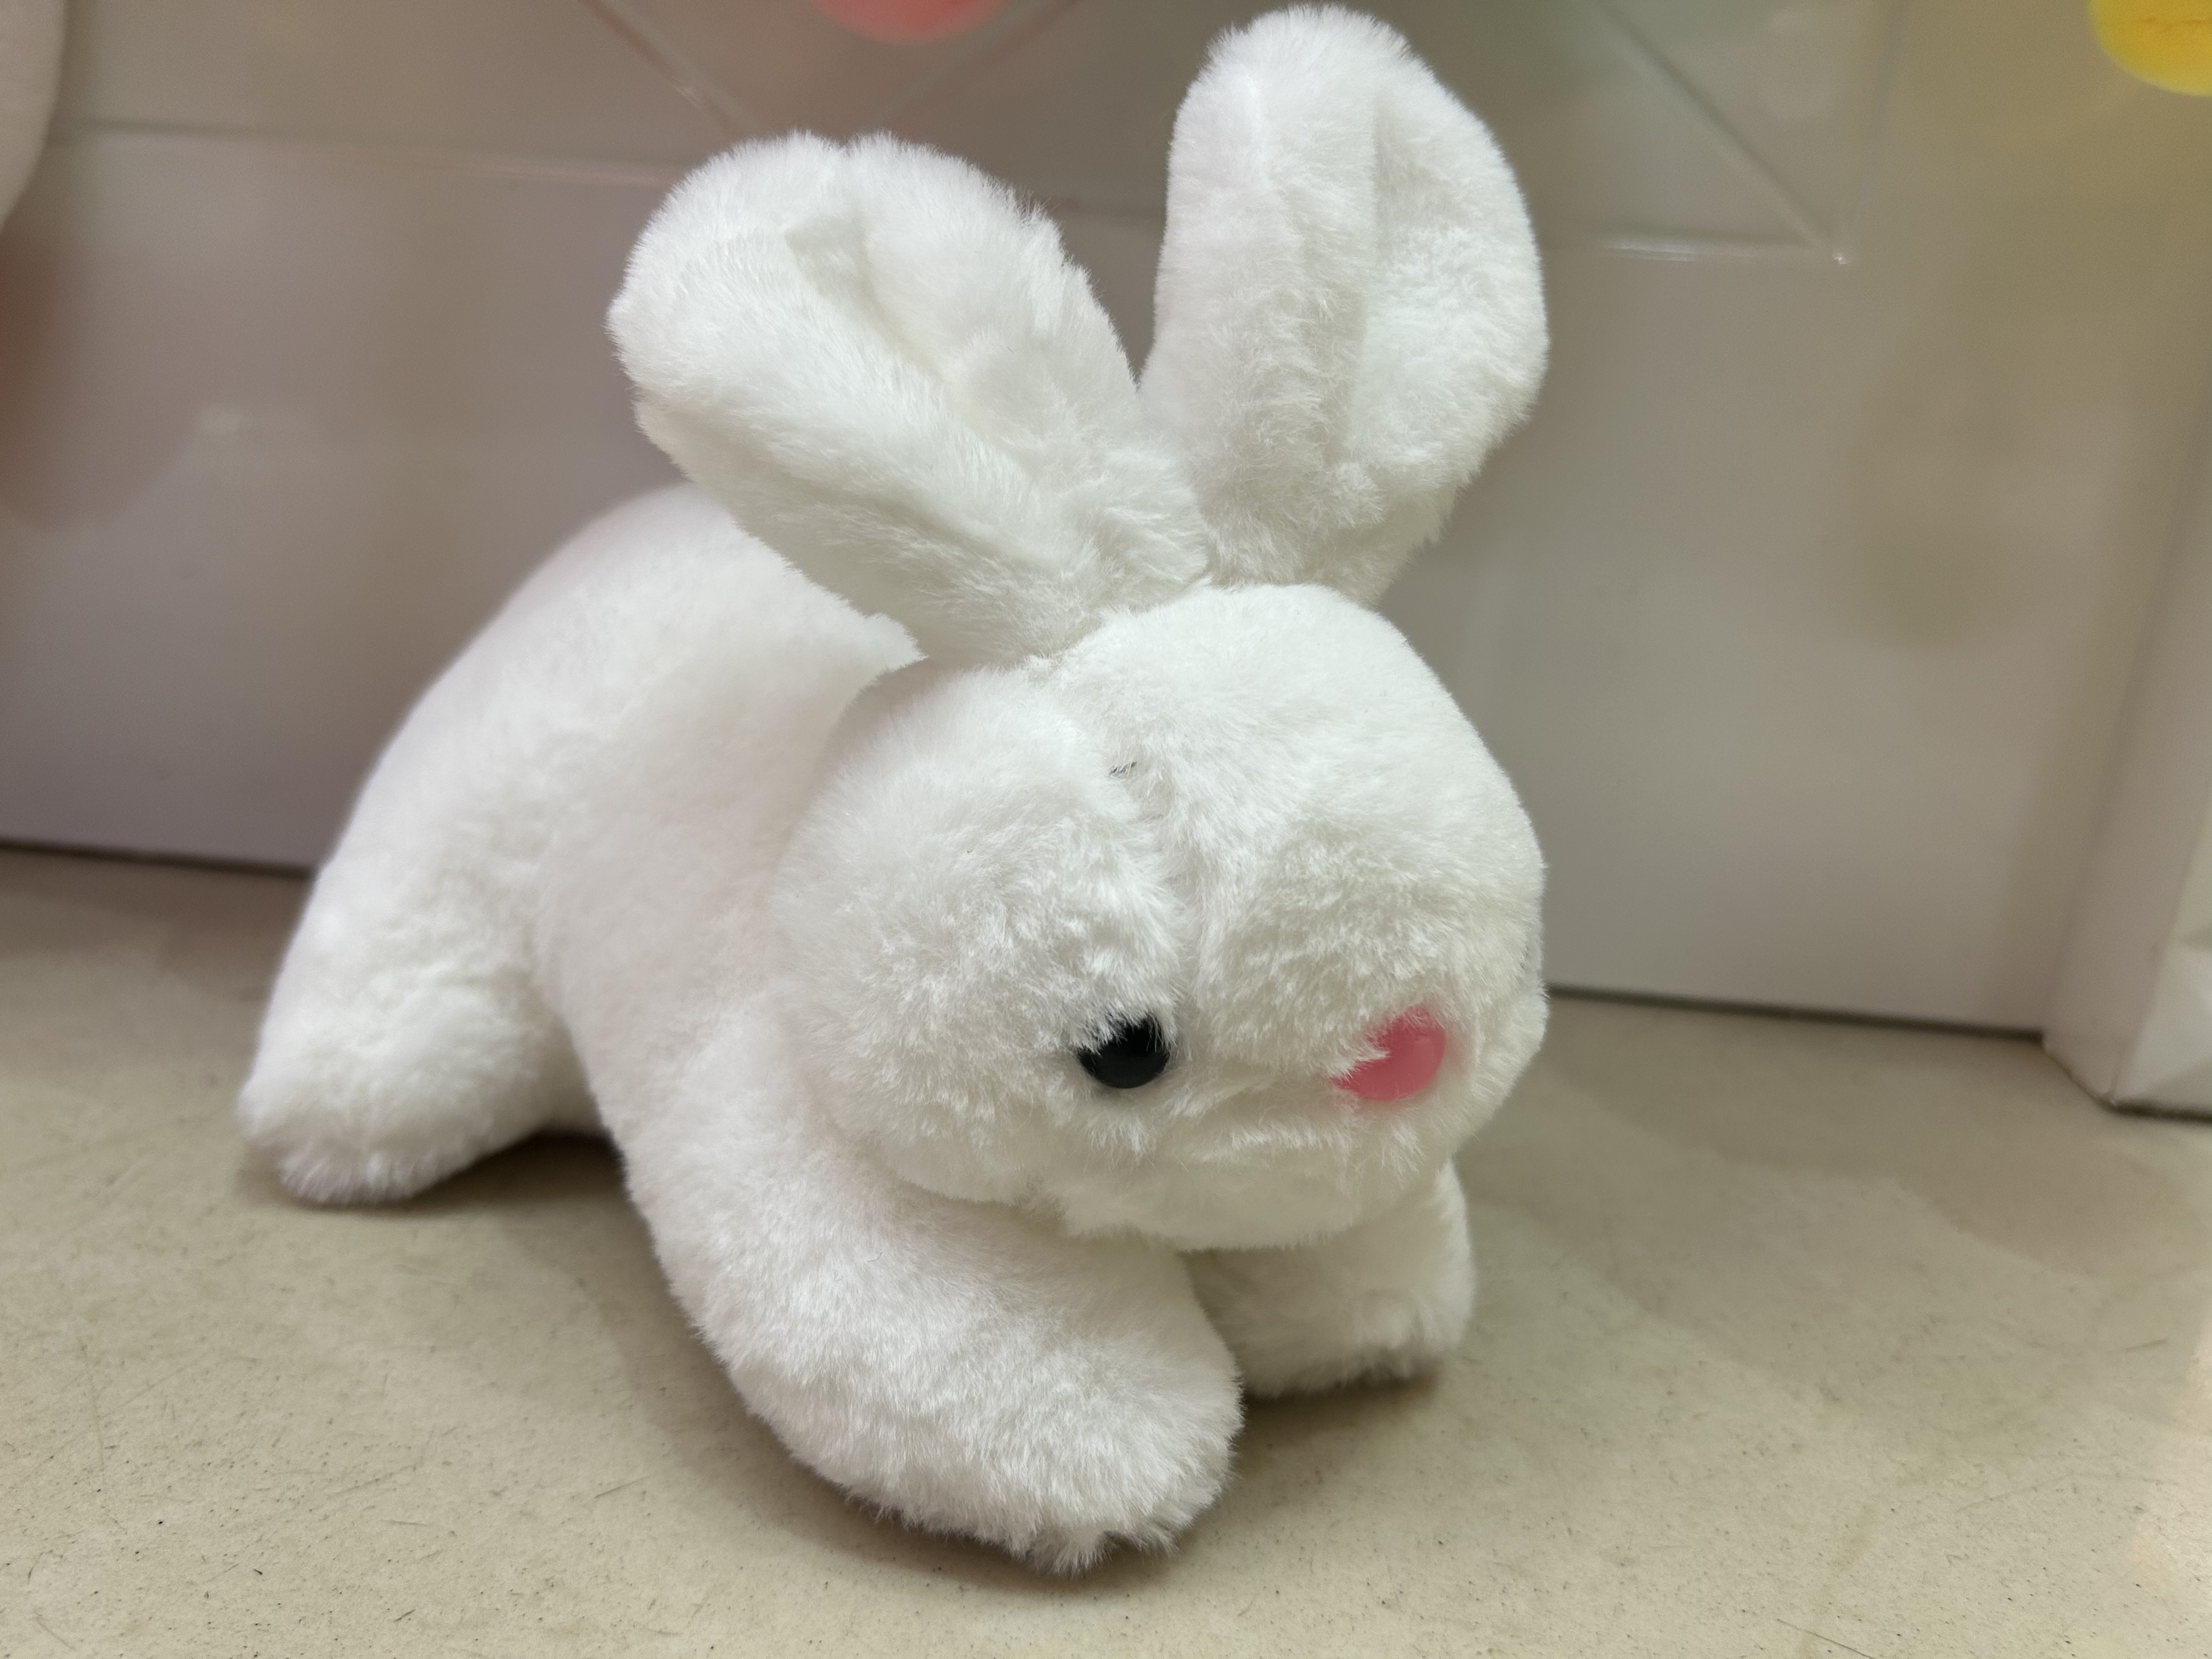 20cm 白色 趴兔 毛绒玩具 公仔玩偶图